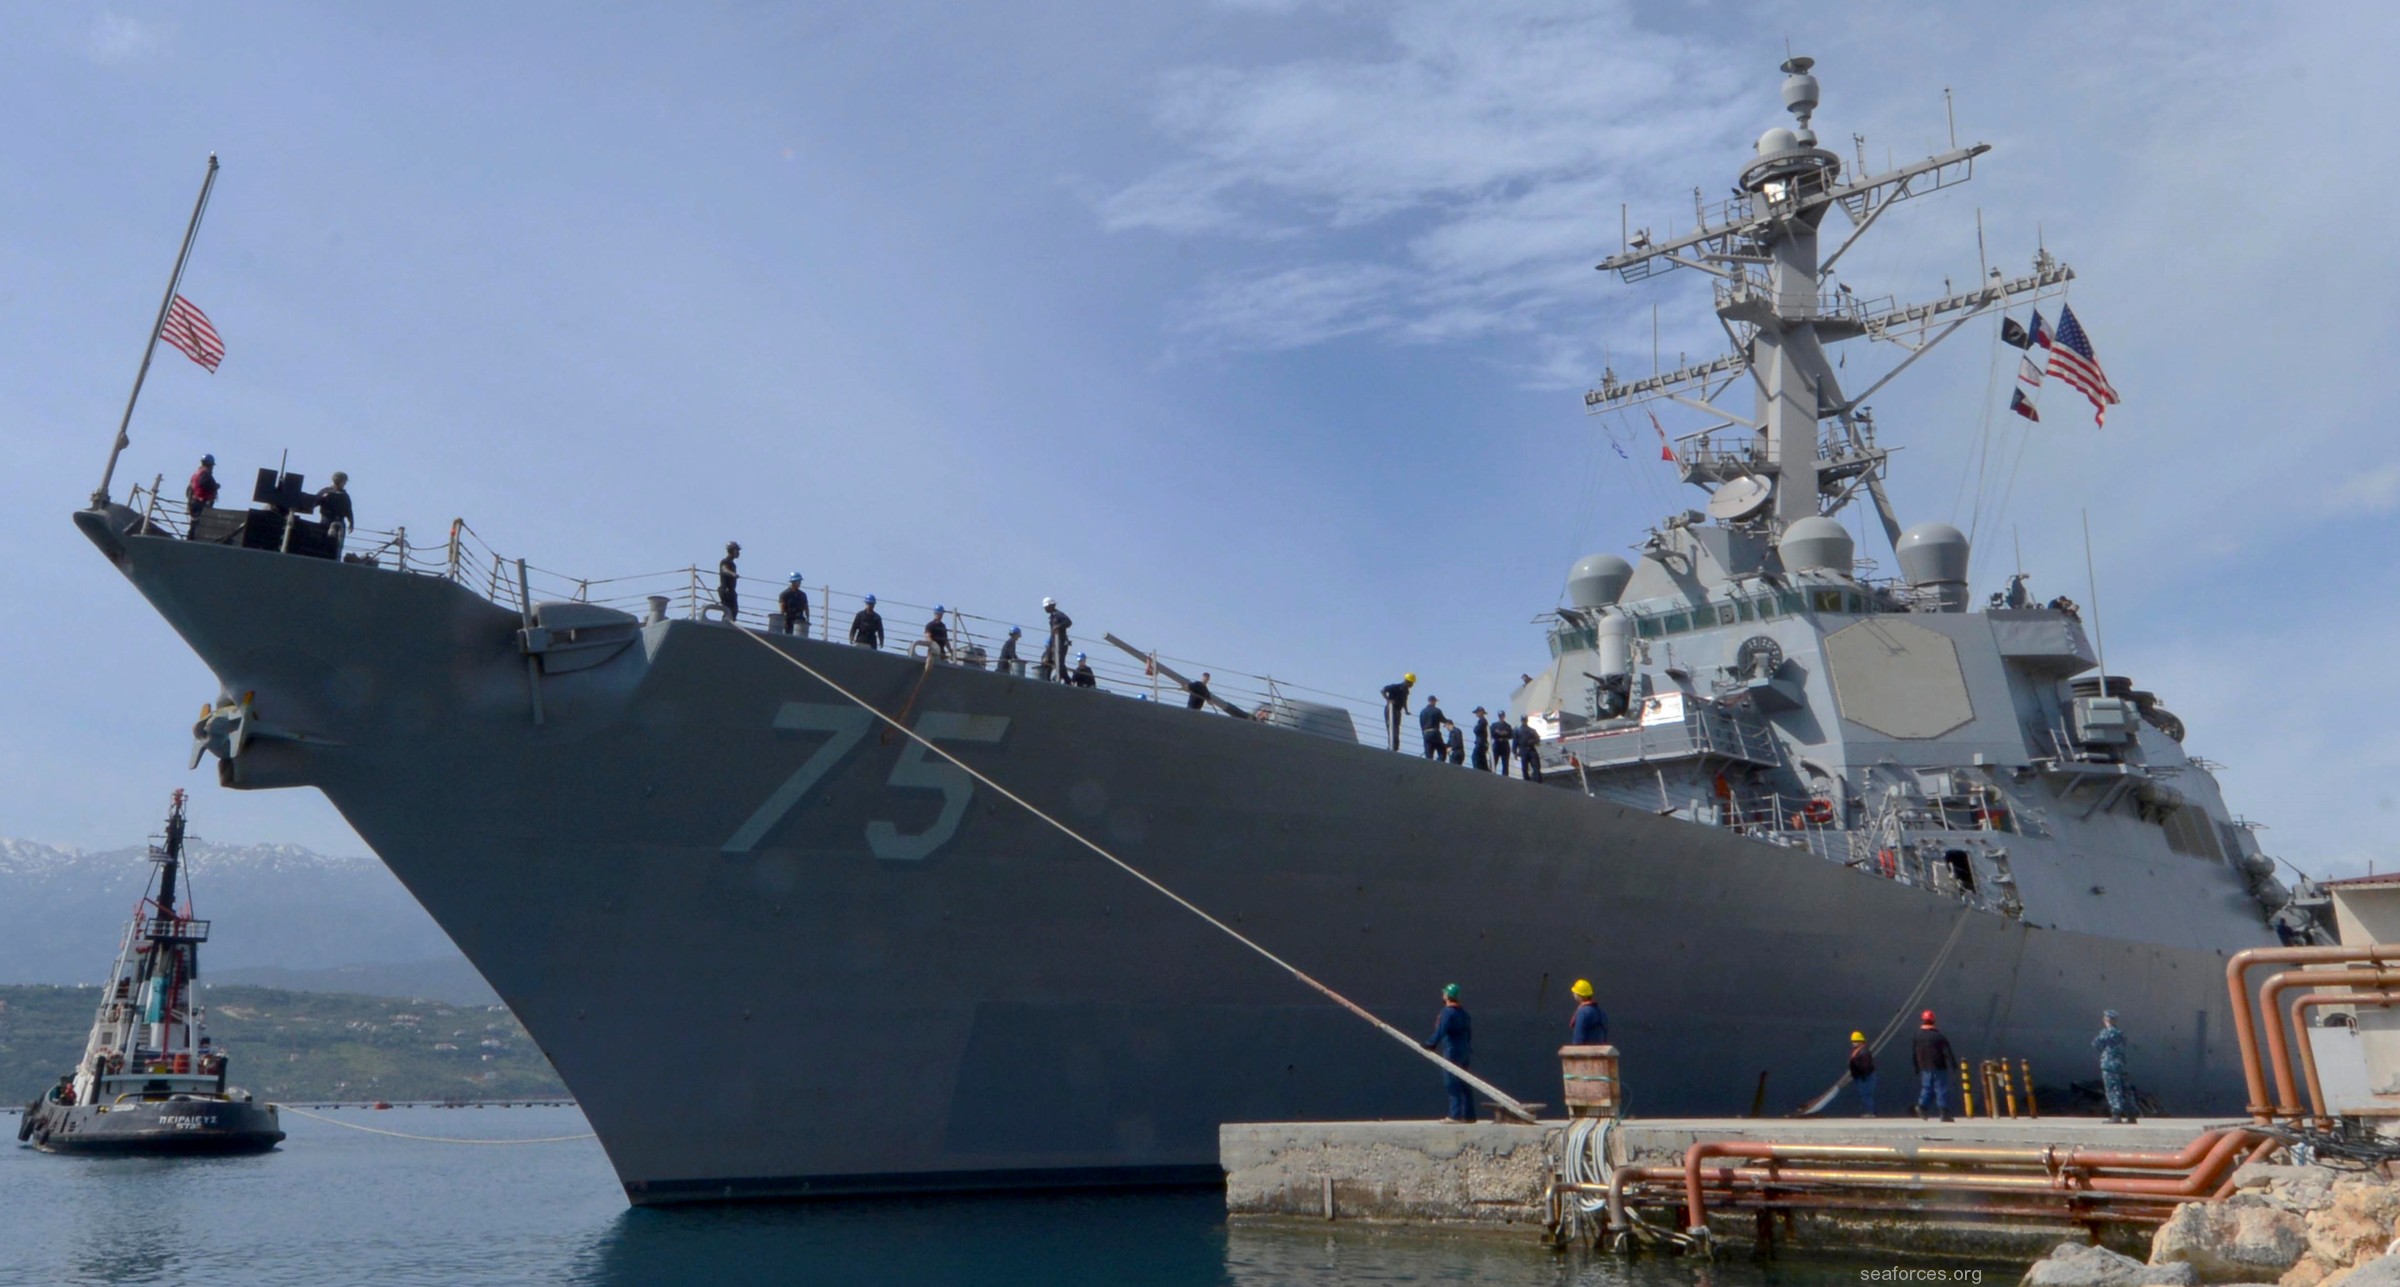 ddg-75 uss donald cook destroyer us navy 75 souda bay 2016